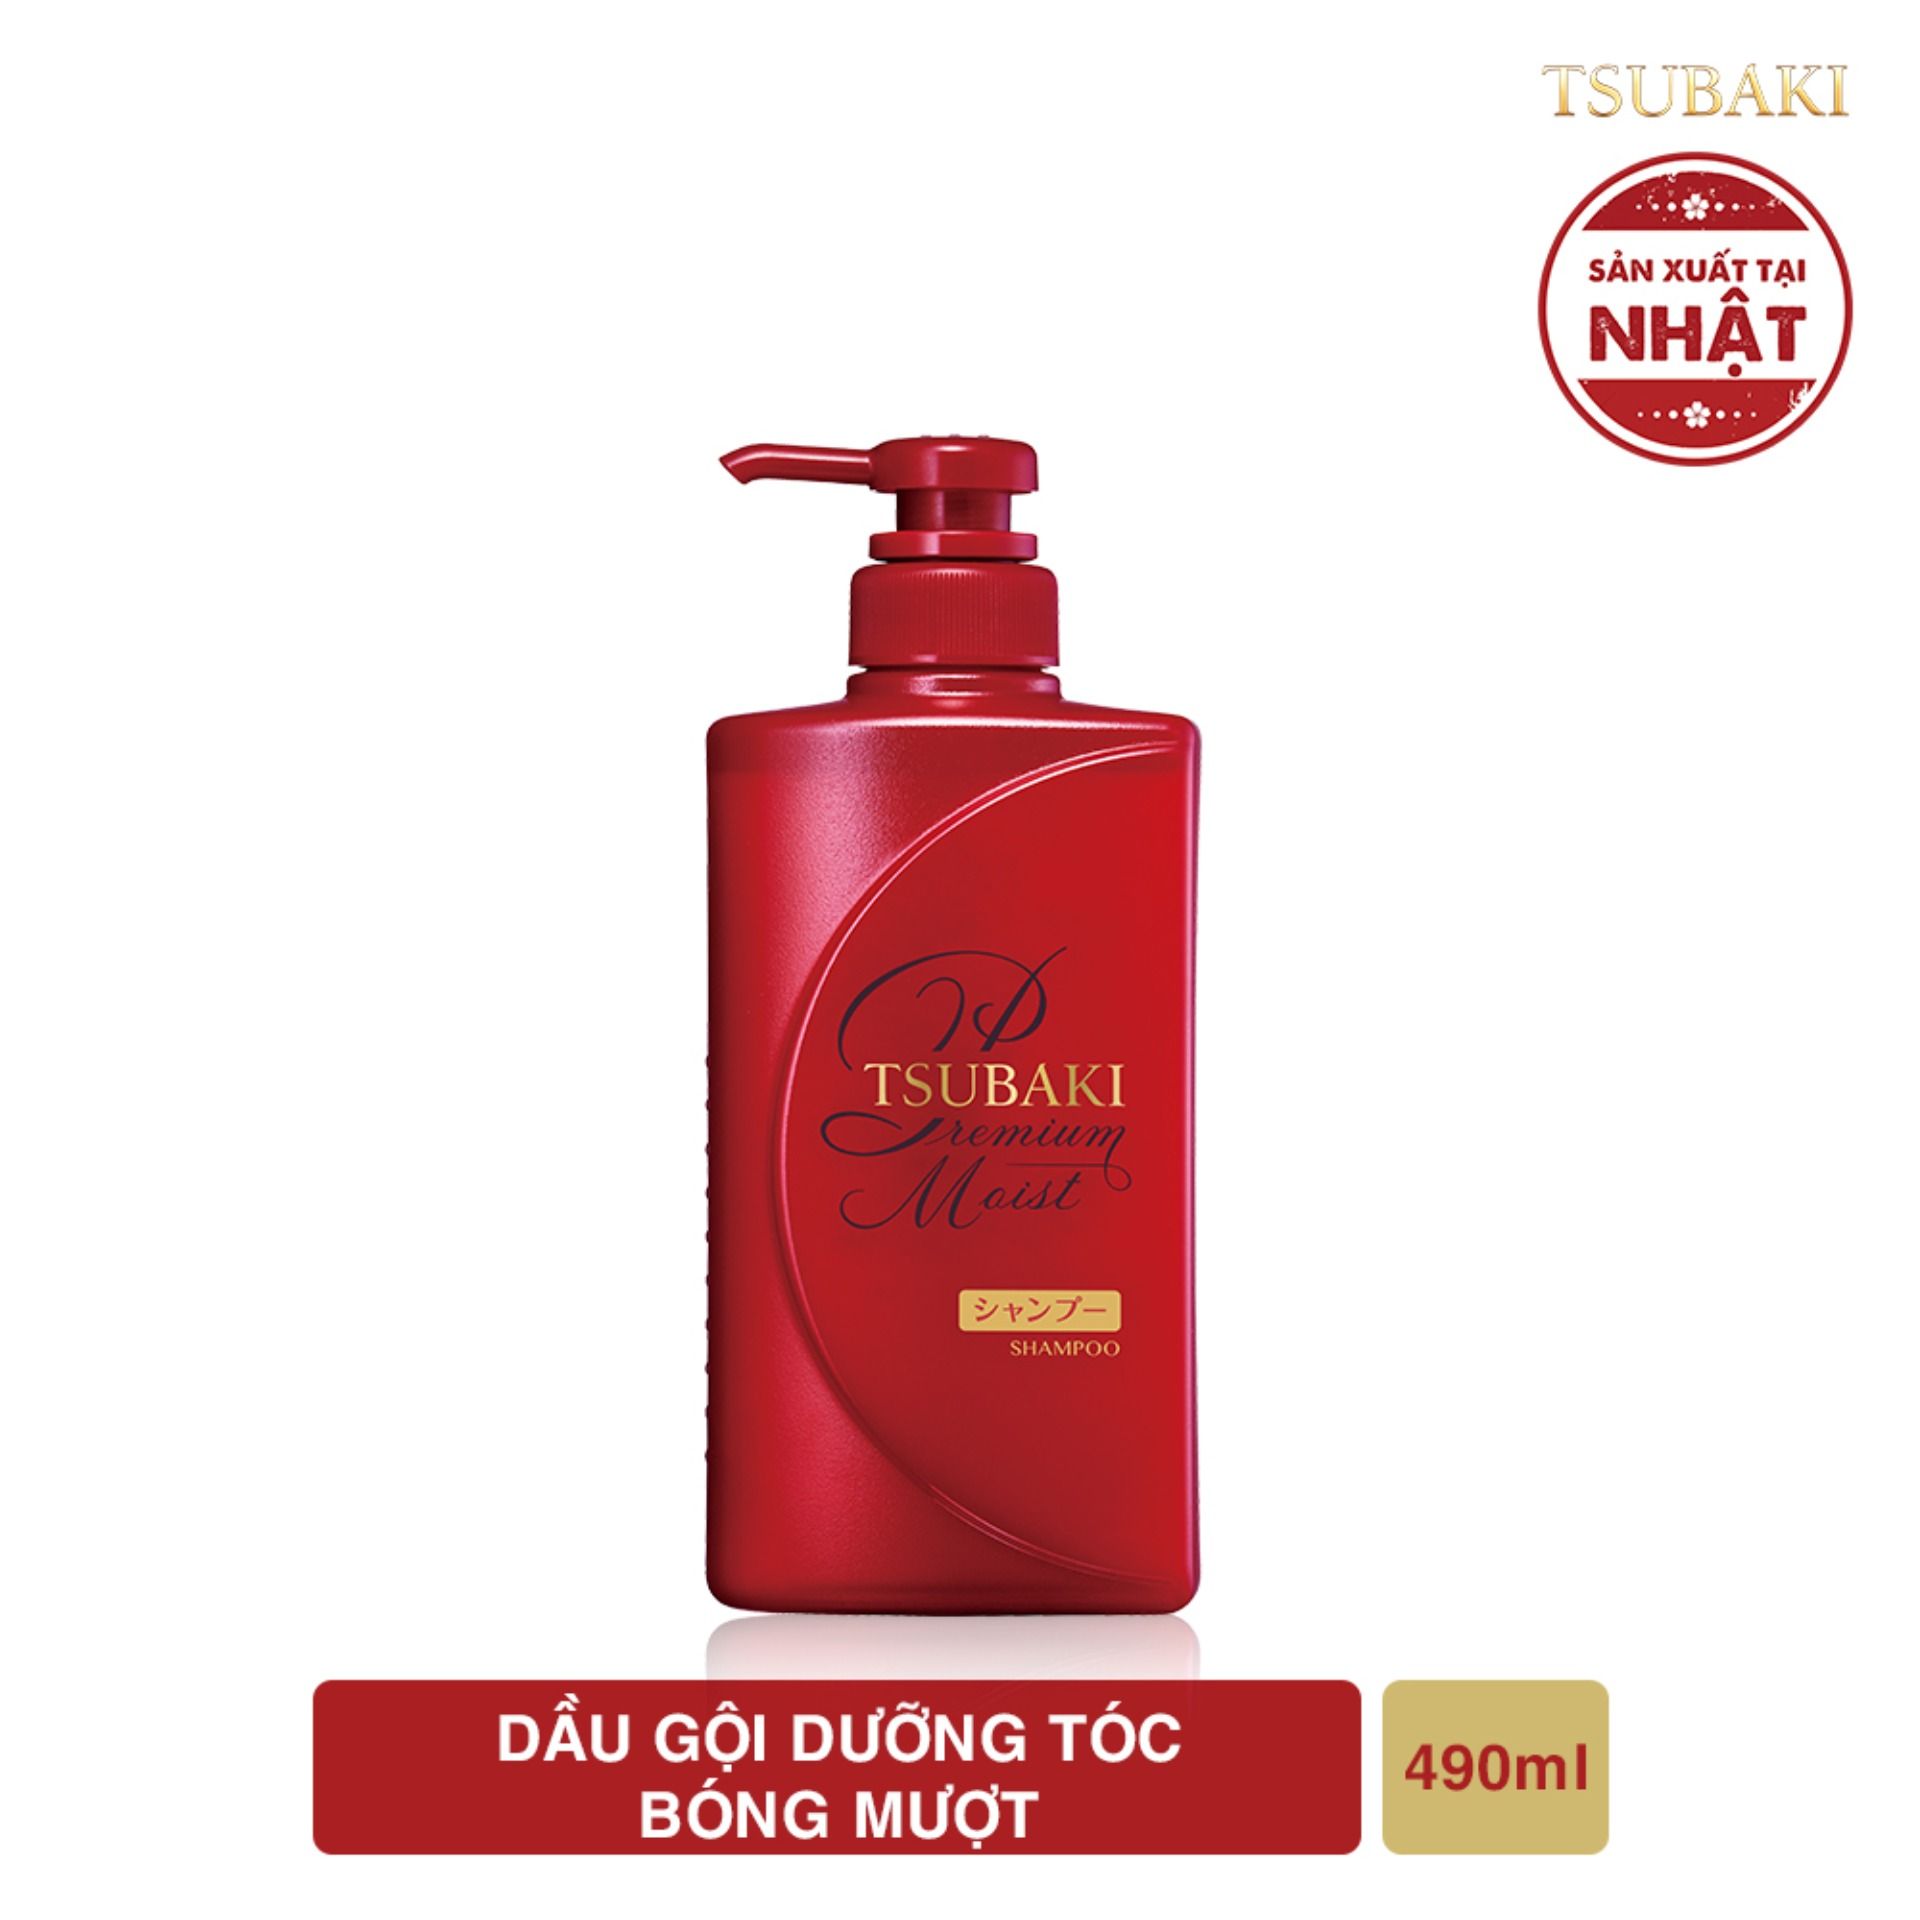  Dầu Gội Dưỡng Tóc Bóng Mượt Tsubaki Premium Moist Shampoo 490ml 